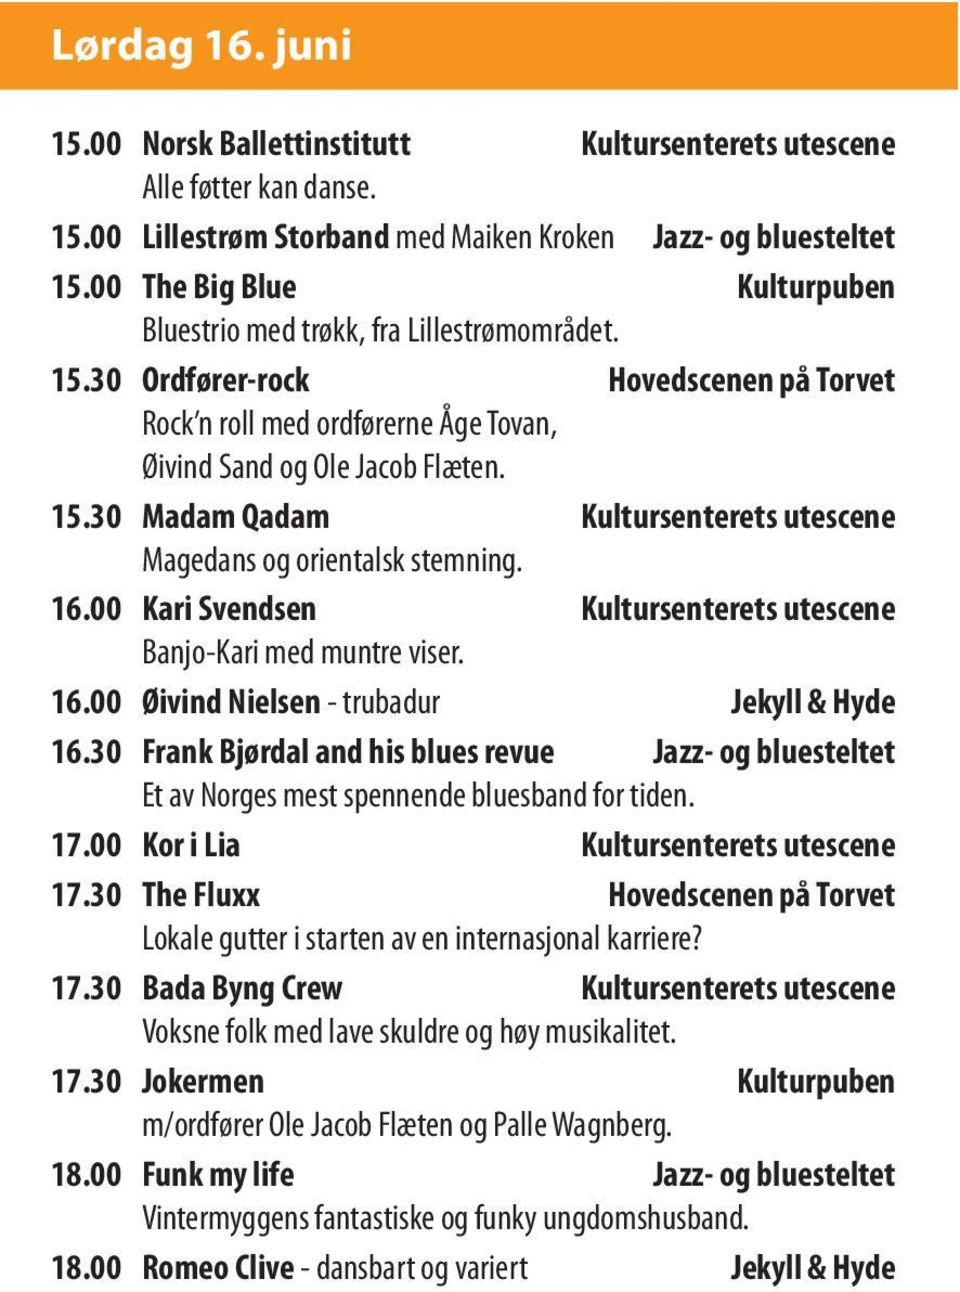 16.00 Kari Svendsen Kultursenterets utescene Banjo-Kari med muntre viser. 16.00 Øivind Nielsen - trubadur Jekyll & Hyde 16.